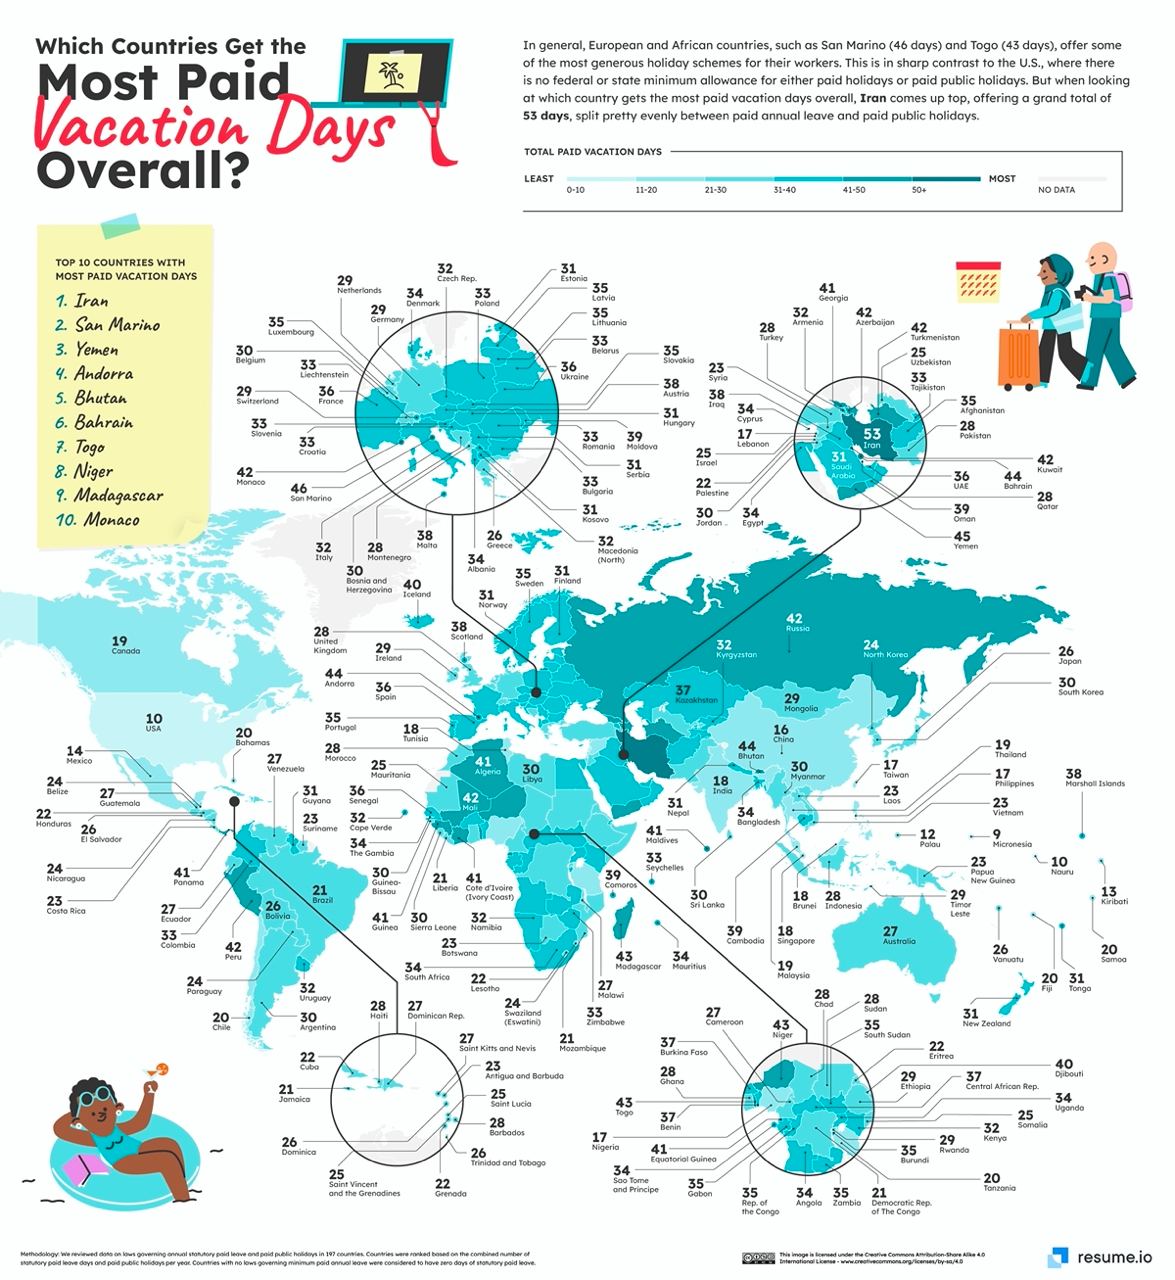 Страны с наибольшим количеством дней оплачиваемого отпуска